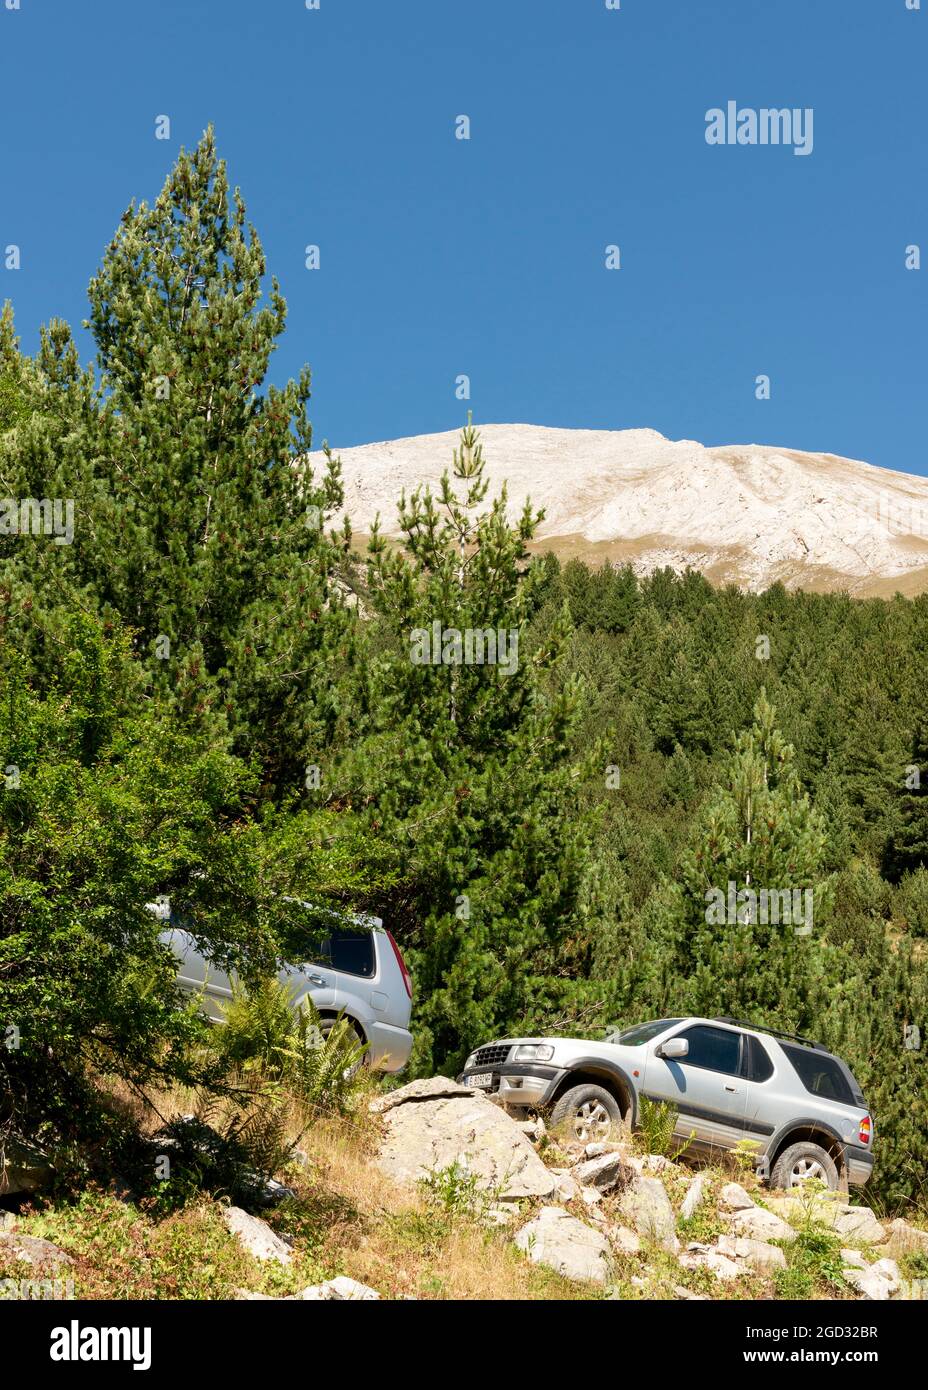 Coches aparcados en la zona de rutas de senderismo al pie del pico Vihren en el Parque Nacional y Reserva Pirin, Pirin Mountain, Bulgaria, Balcanes, Europa Foto de stock